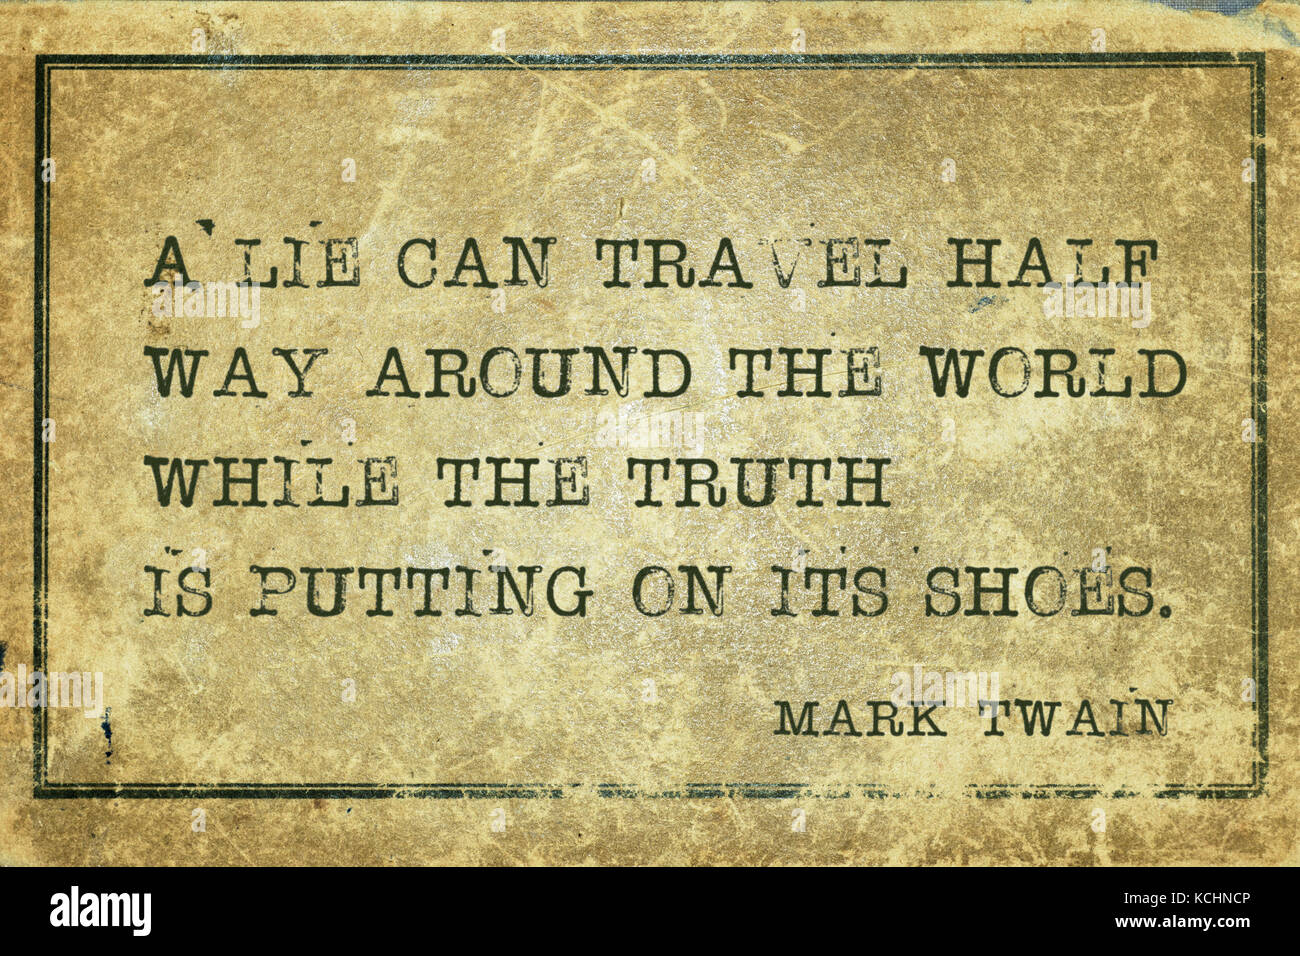 Eine Lüge kann die Hälfte weg Reisen rund um die Welt Während die Wahrheit setzt sich auf seine Schuhe - der amerikanische Schriftsteller Mark Twain Zitat gedruckt auf grunge Vintage Stockfoto